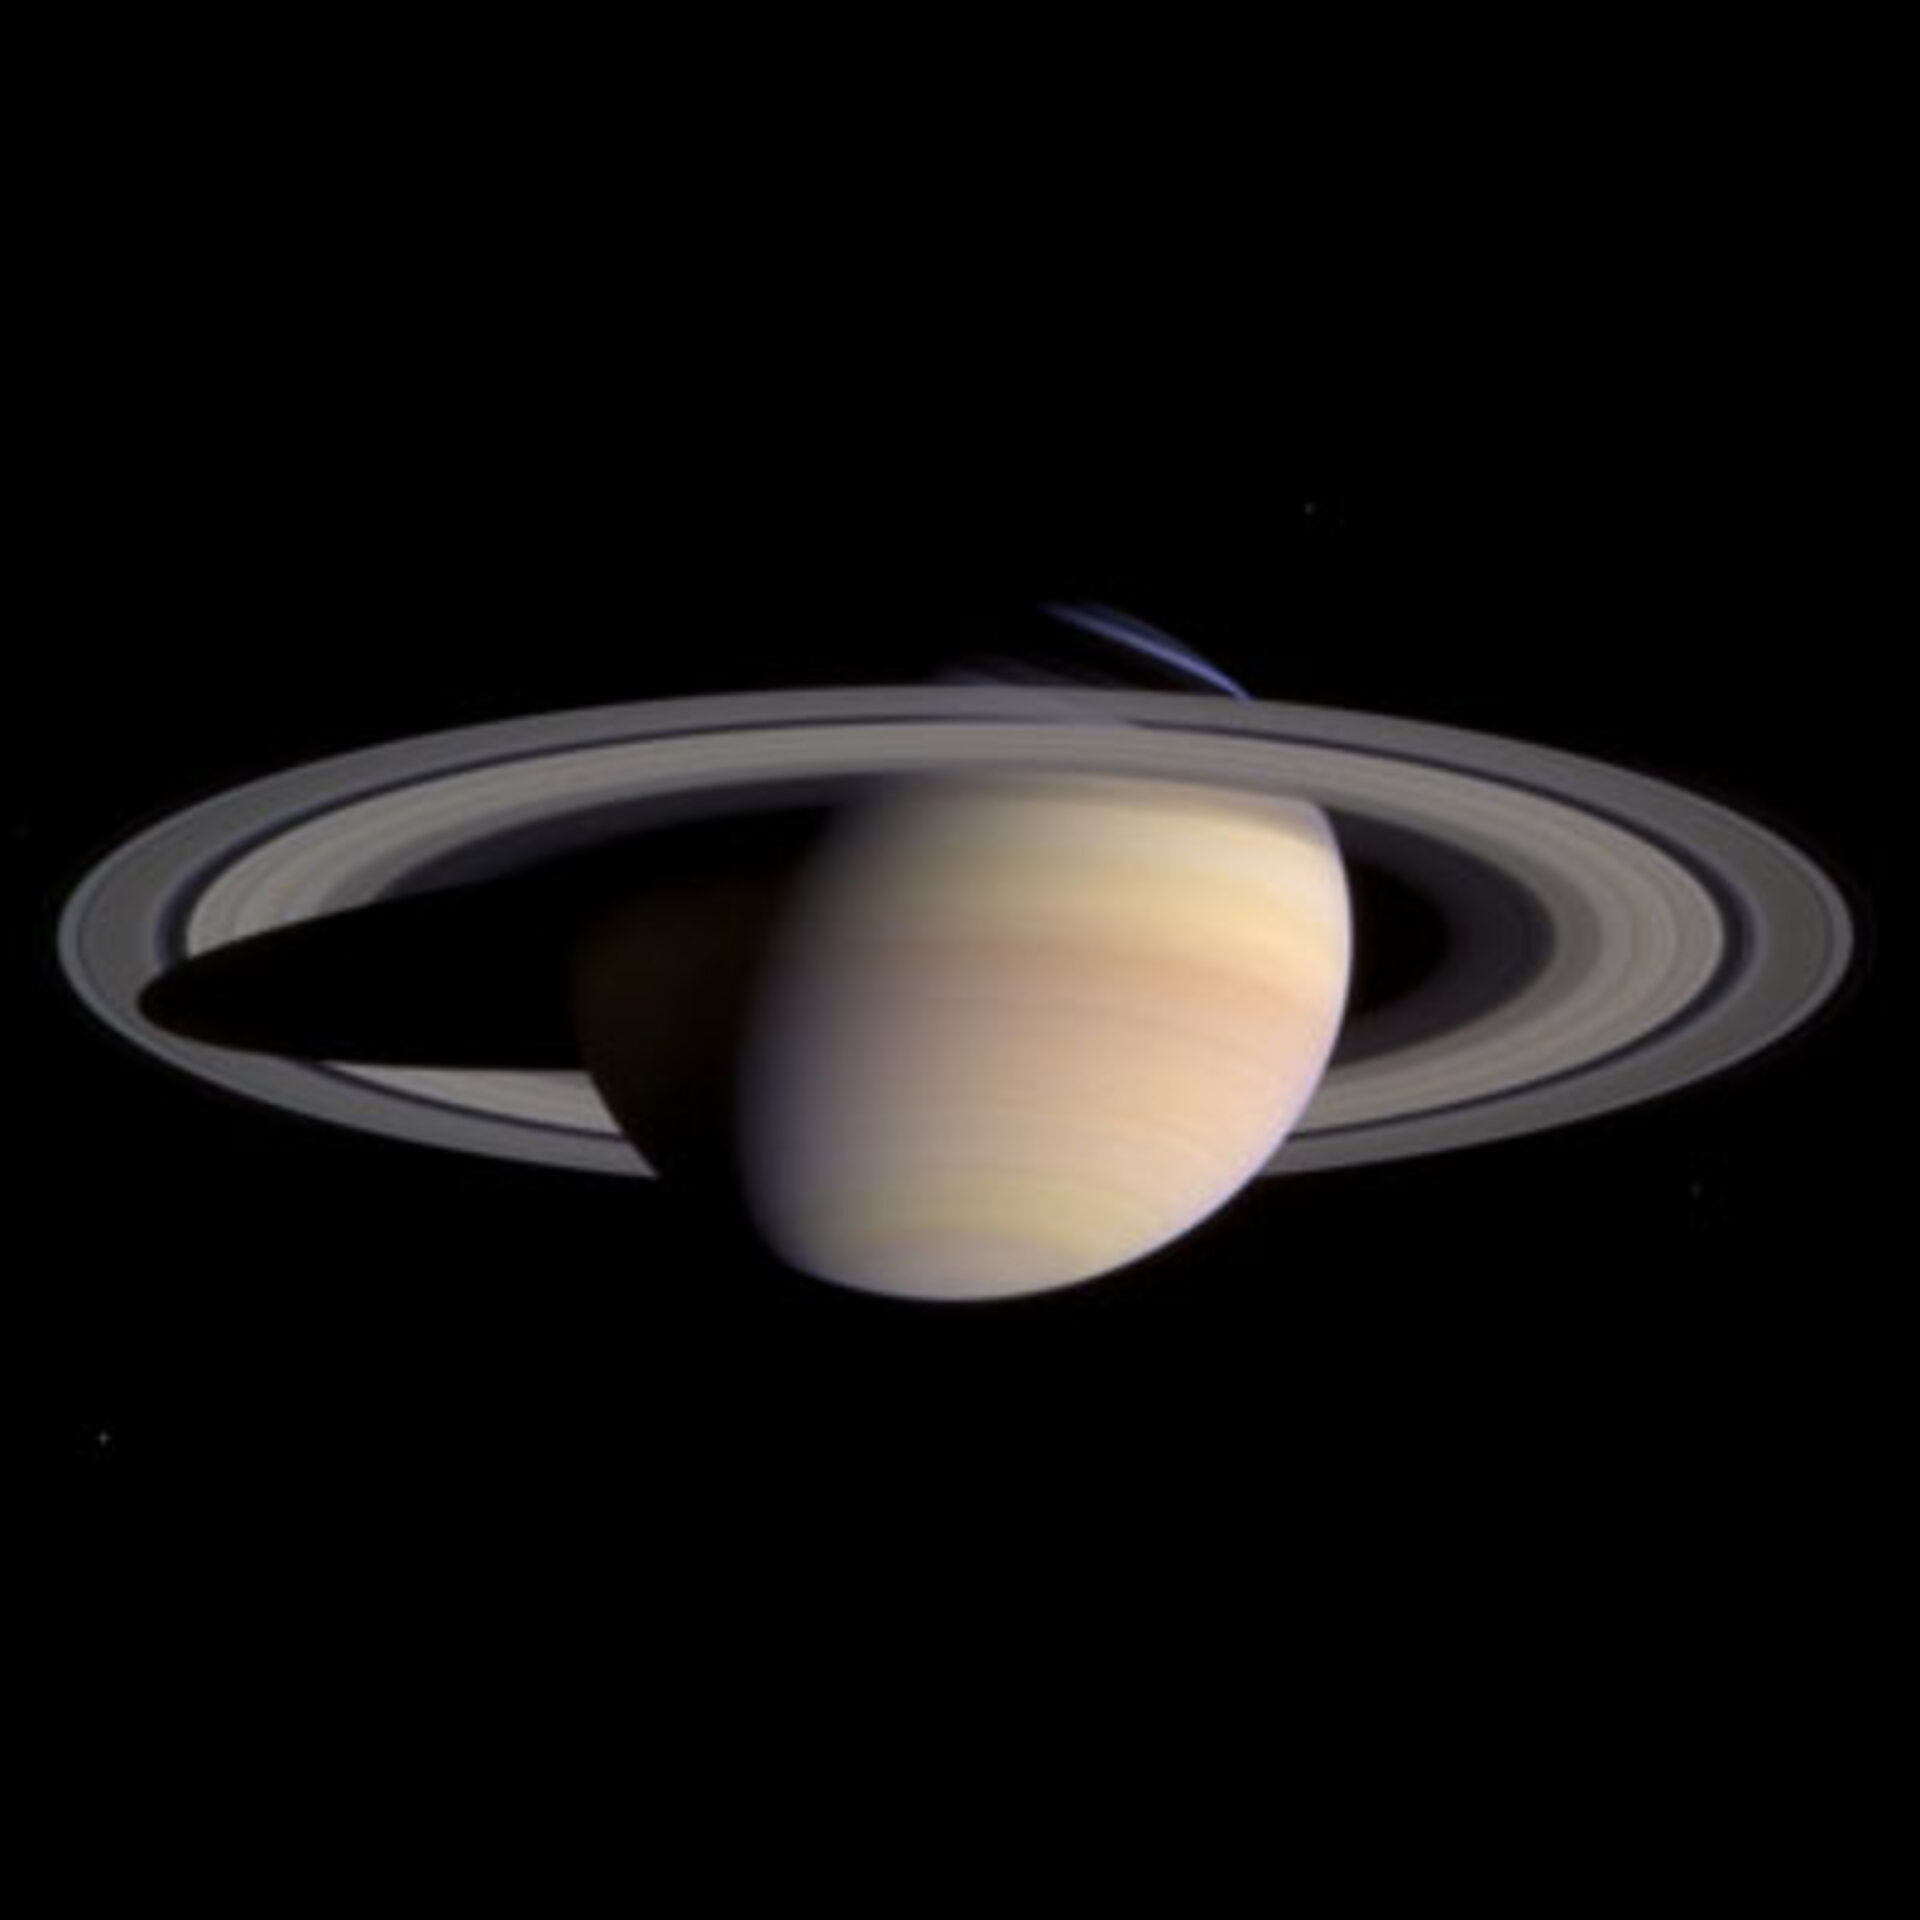 Cassini tekee Saturnukseen saapumisensa aikana erittäin tarkkoja havaintoja planeetasta ja sen renkaista